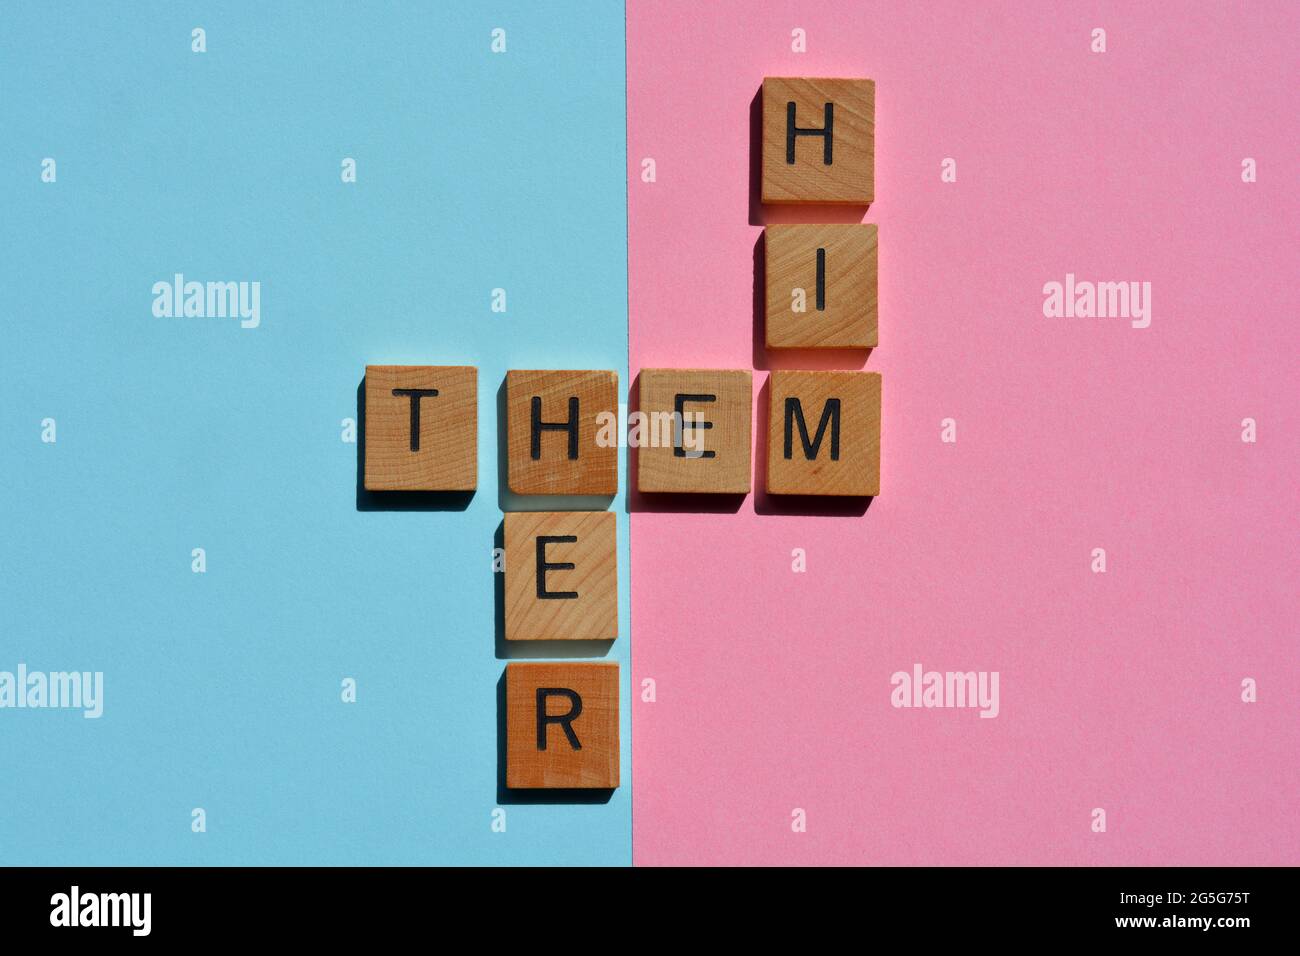 Er, sie, sie, Geschlechterpronomen in Kreuzworträtsel auf rosa und blauem Hintergrund Stockfoto